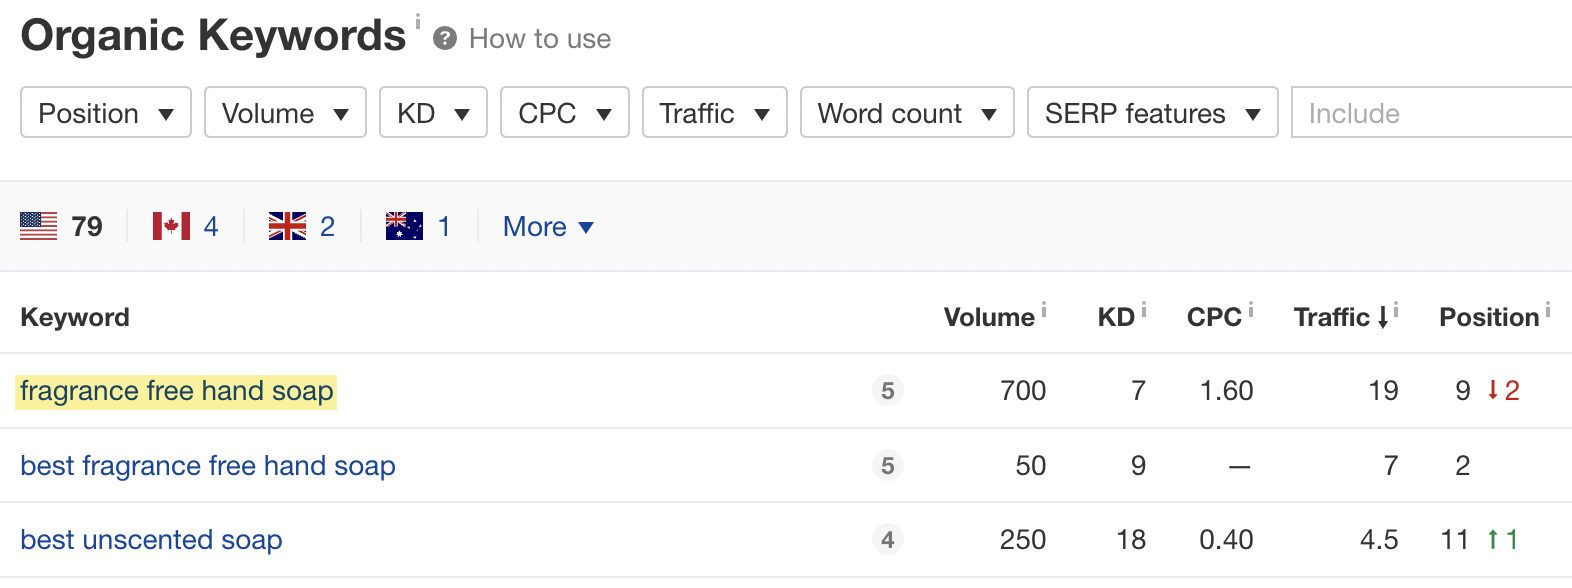 Liste de mots-clés avec les données correspondantes telles que Volume, KD, etc.